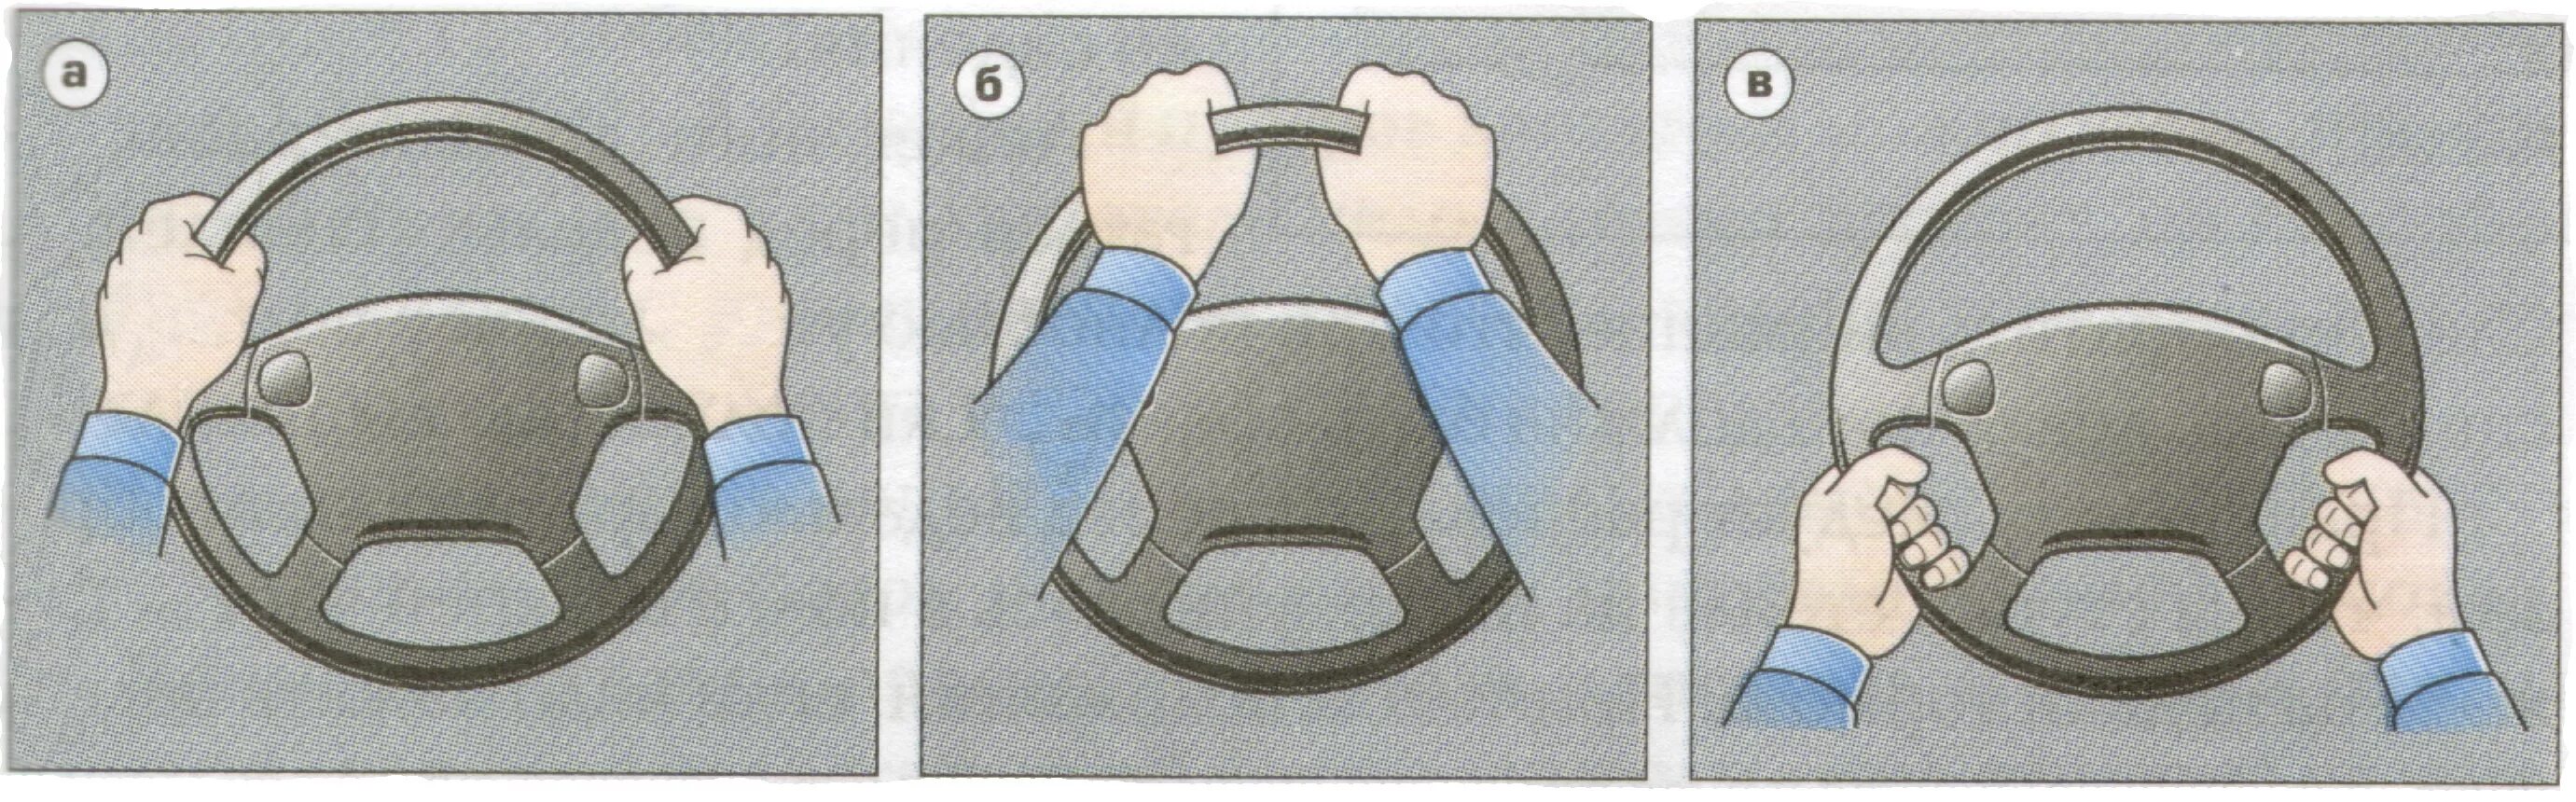 Как правильно держать руль. Положение рук на руле. Правильное положение рук на руле автомобиля. Положение рук на рулевом колесе. Посадить за руль без прав